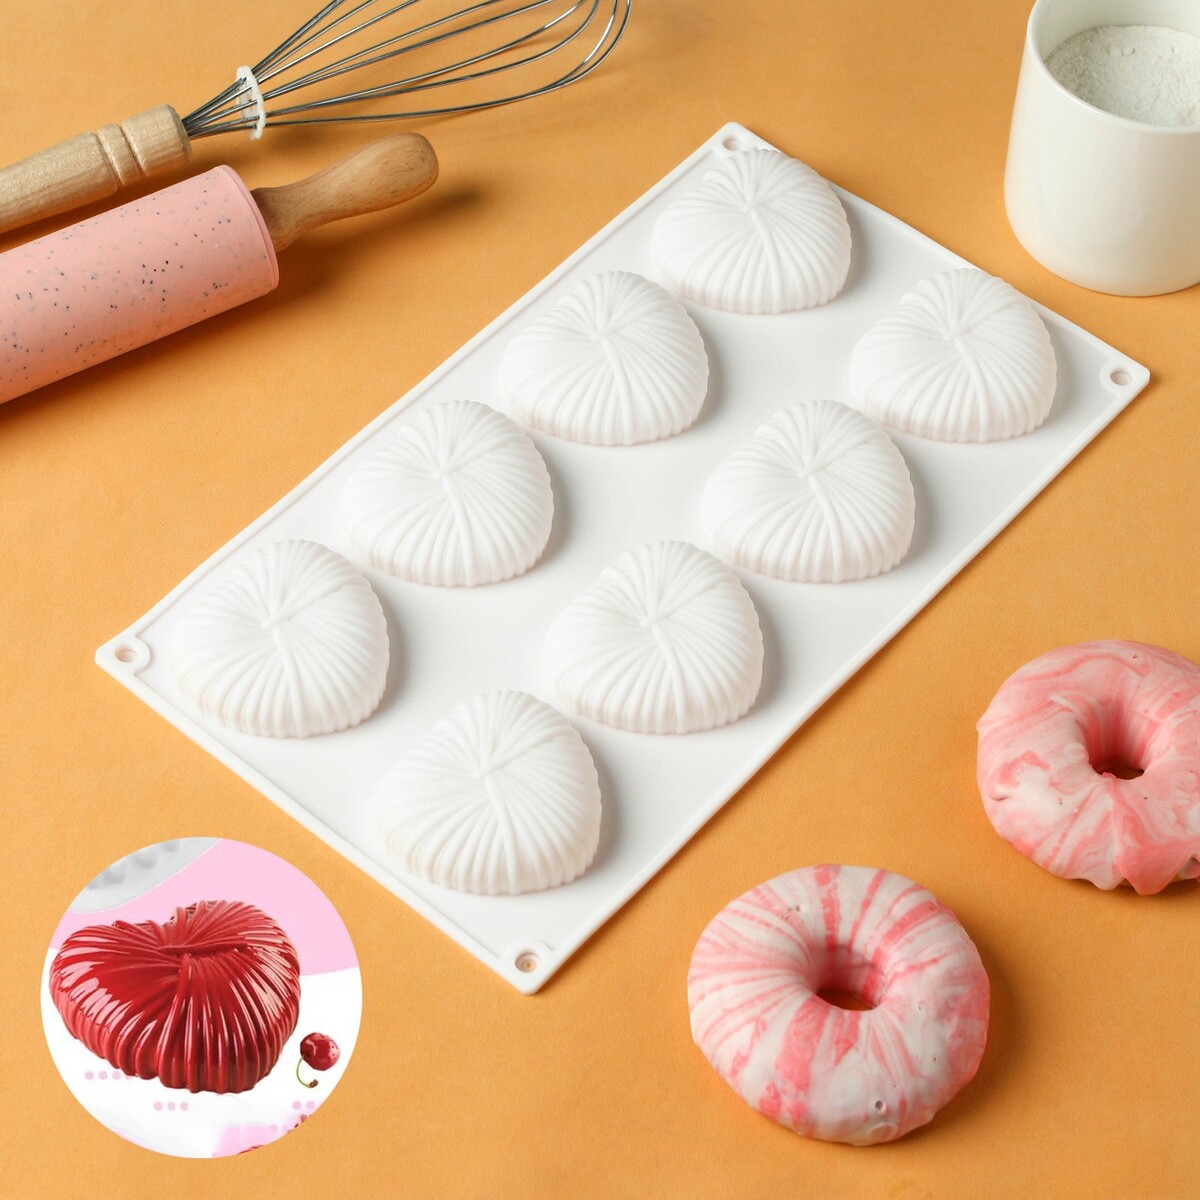 Форма для муссовых десертов и выпечки konfinetta подставка для мороженого и десертов konfinetta 28×21×10 см хромированный